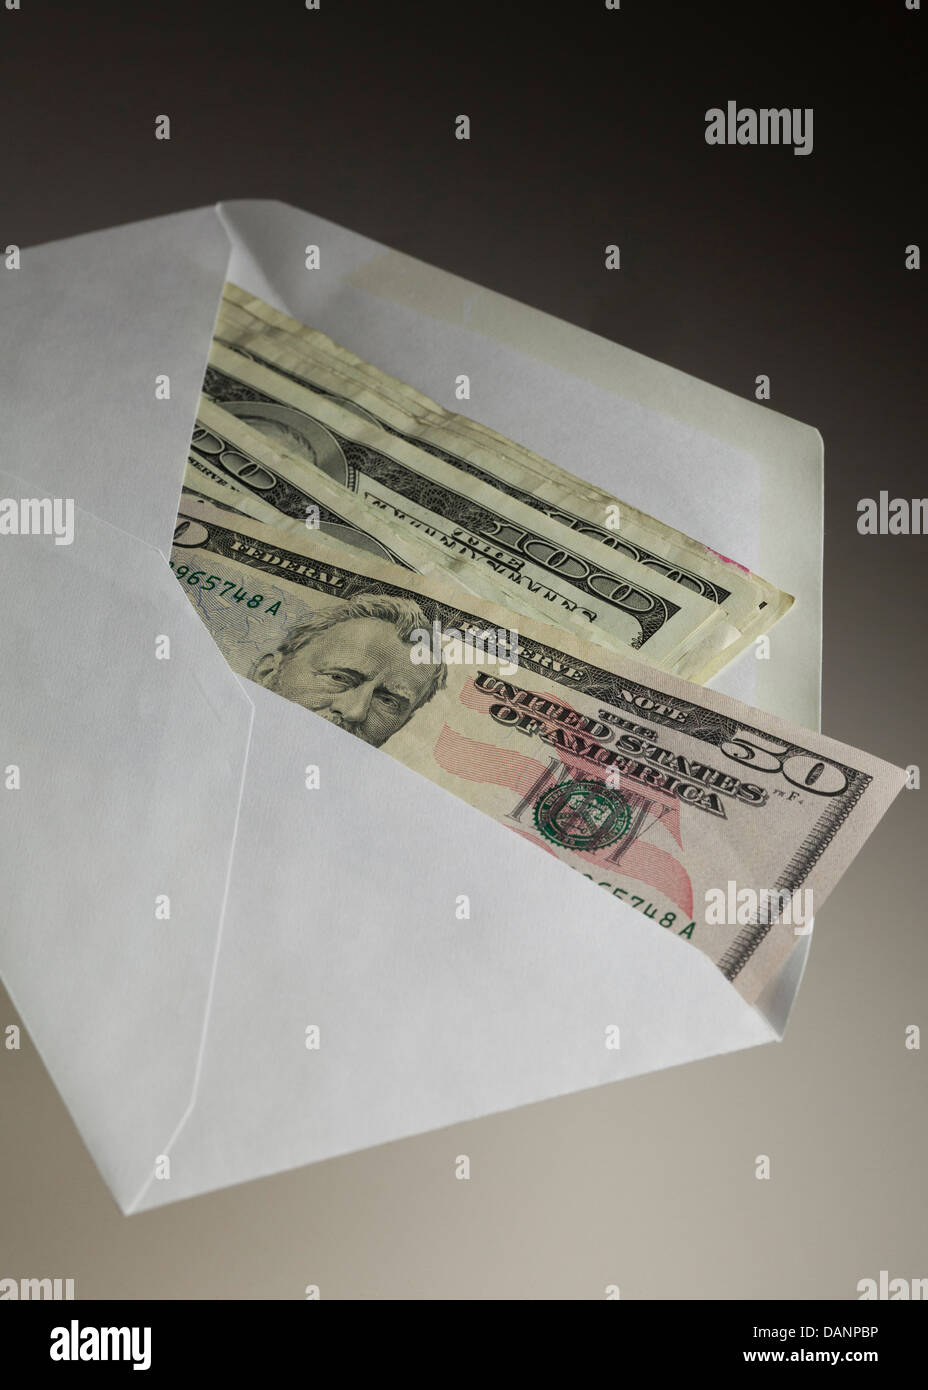 US money in envelope Stock Photo